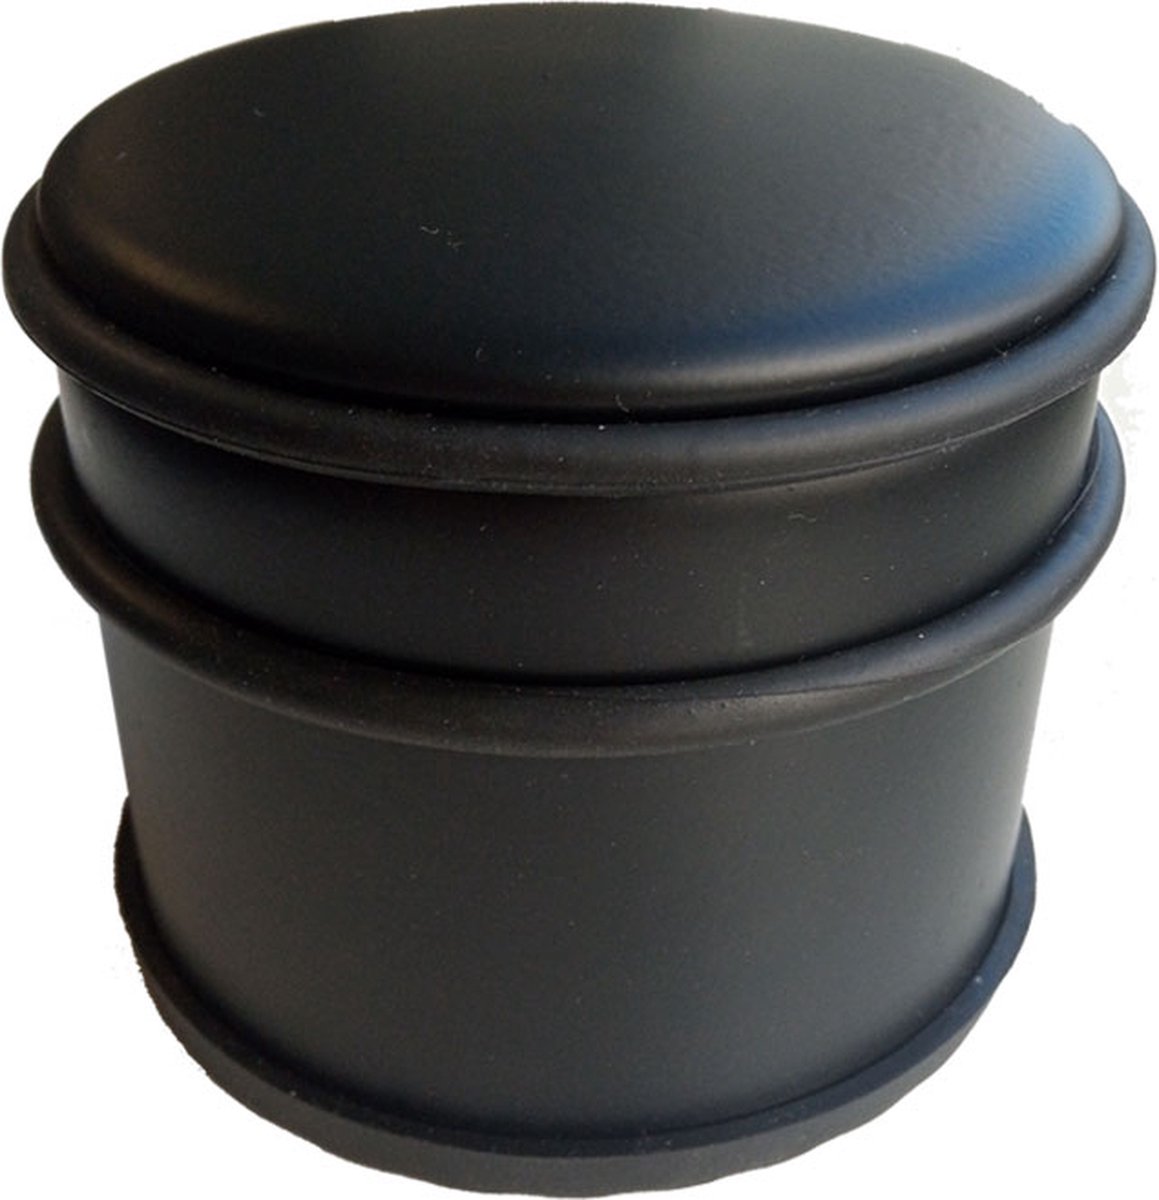 BRASQ Deurstopper Set van 2 Zwart 1,1 Kg - Voor binnen en buiten - Deurbuffer met anti-slip ⌀9 x 7,5 cm